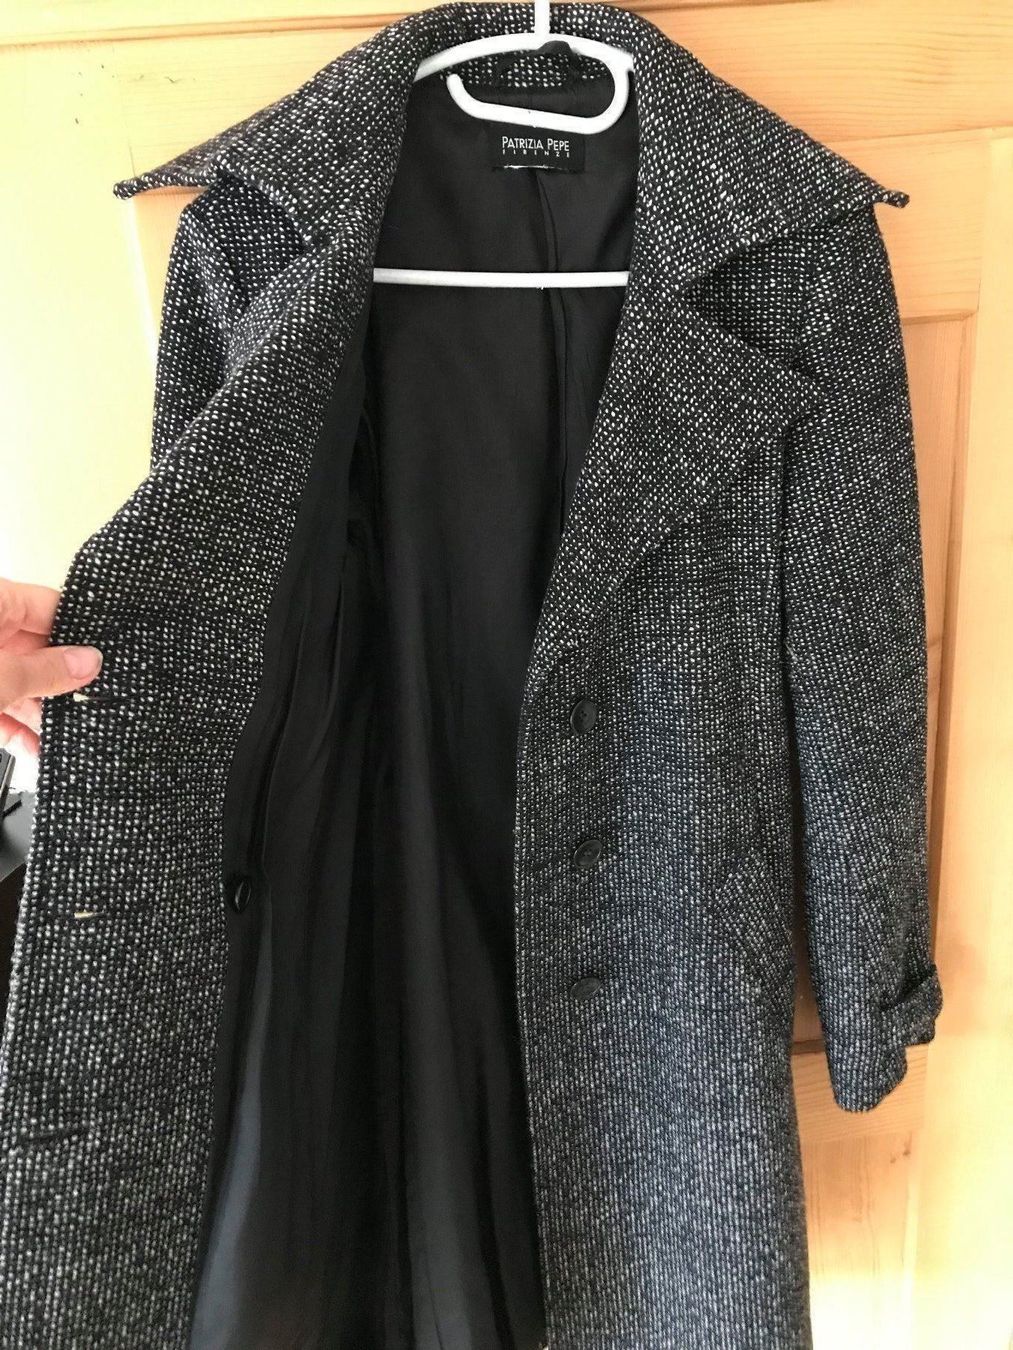 Damen Mantel von Patrizia Pepe Firenze kaufen auf Ricardo